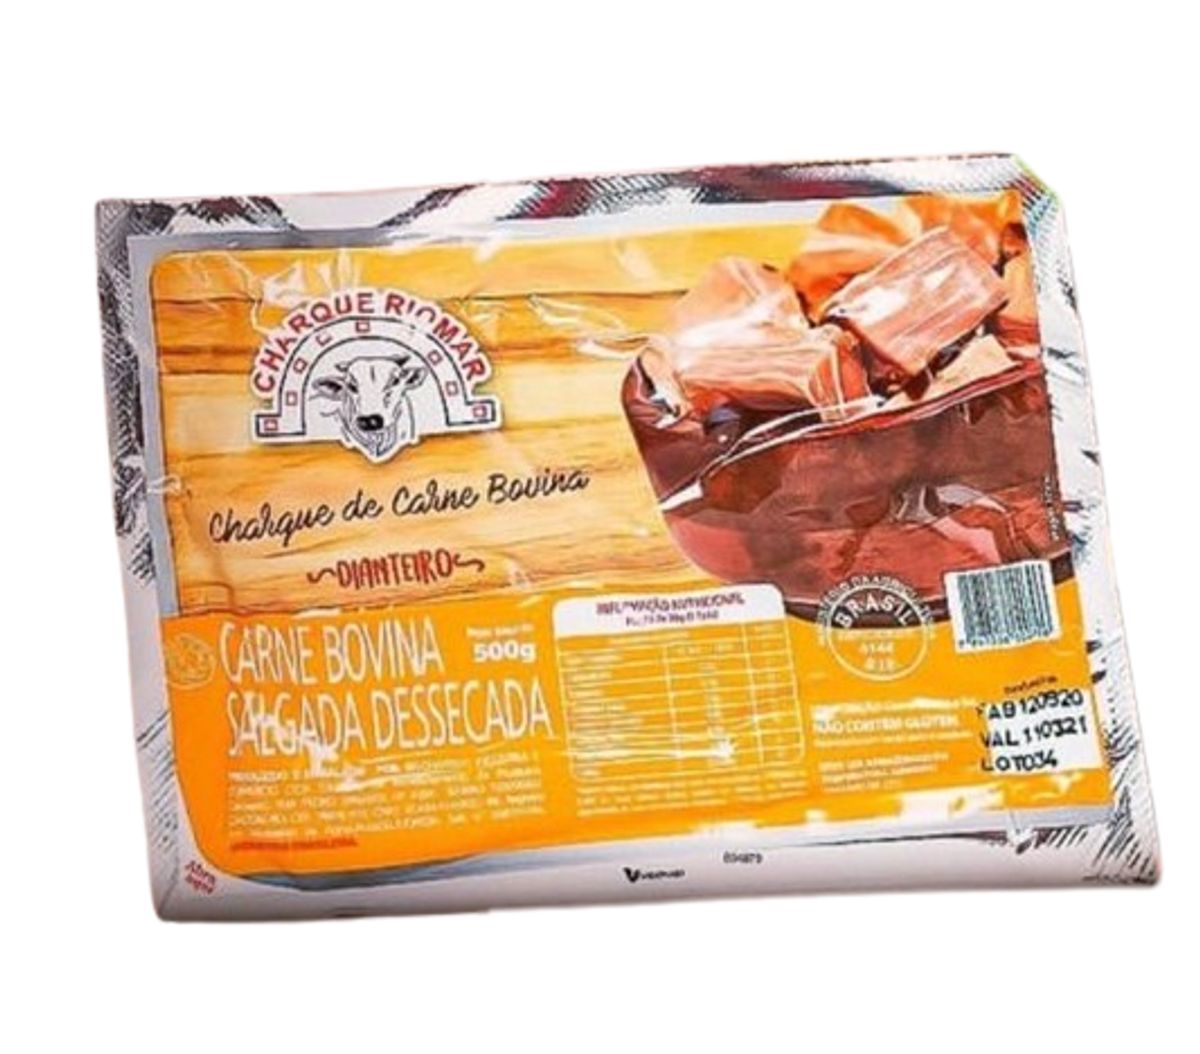 Carne Bovina Salgada Dessecada Charque Riomar Dianteiro 500g